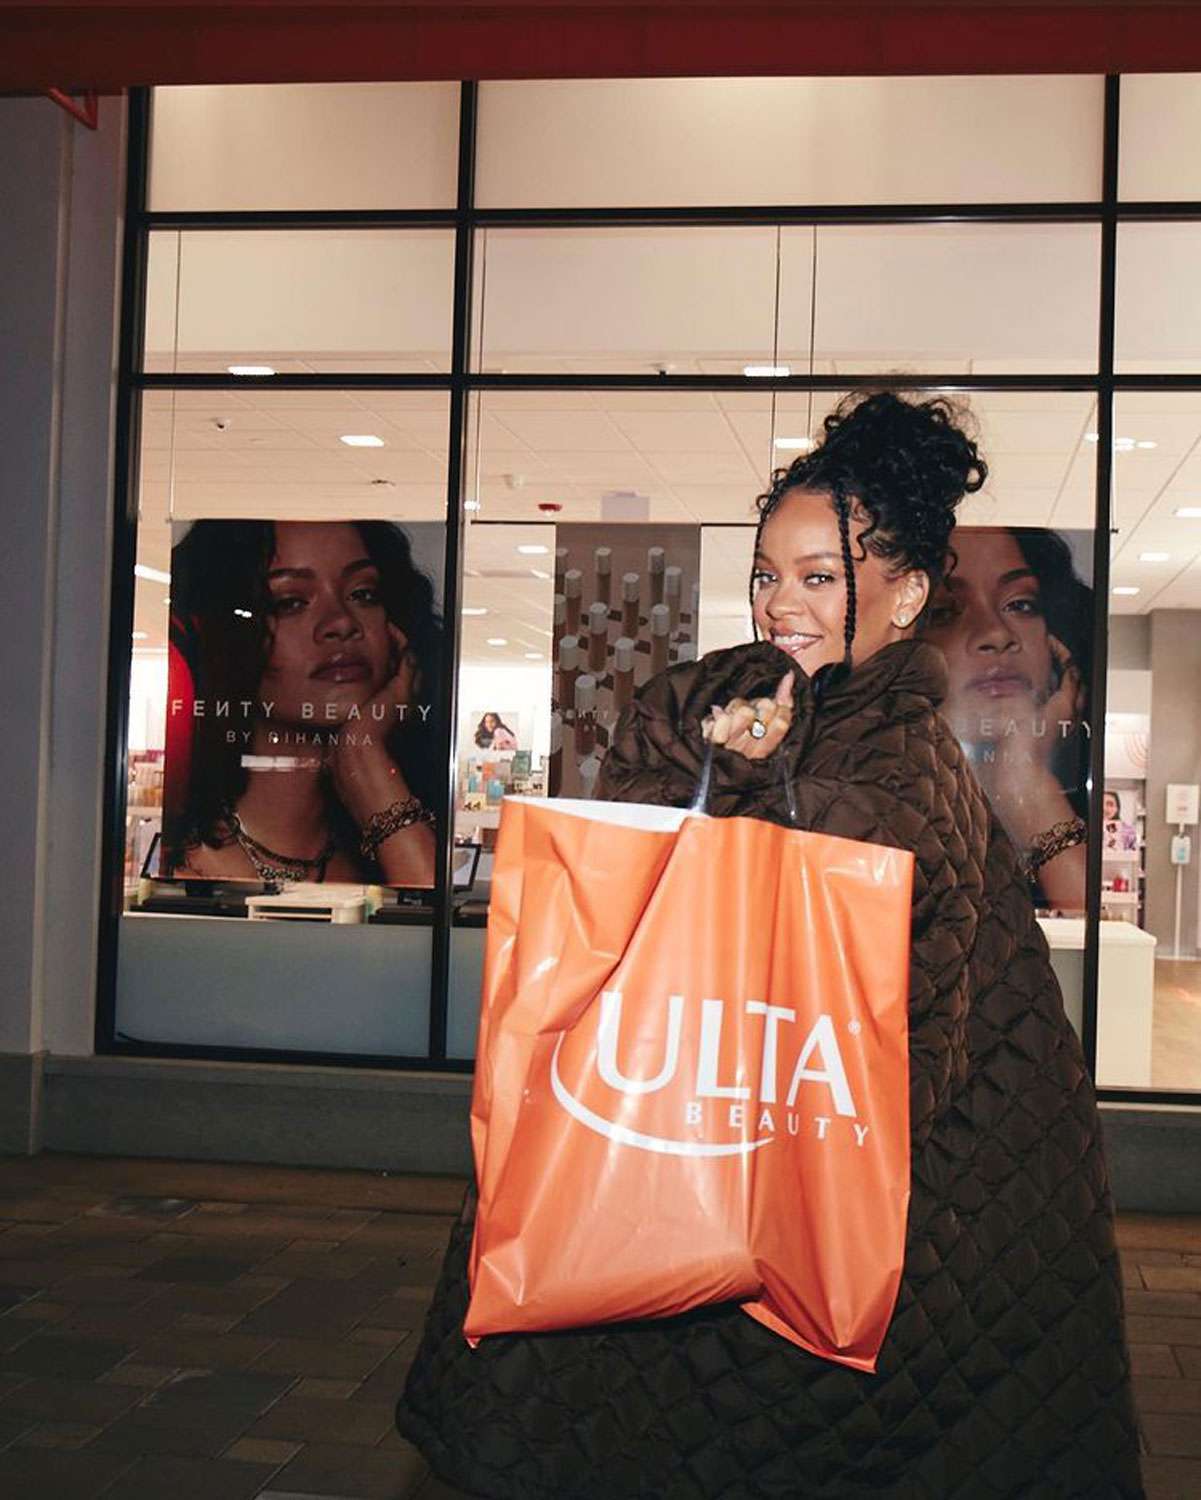 Rihanna annonce qu'elle apportera Fenty Beauty à Ulta avec une séance photo sur le parking : "In My Ulta Bag"